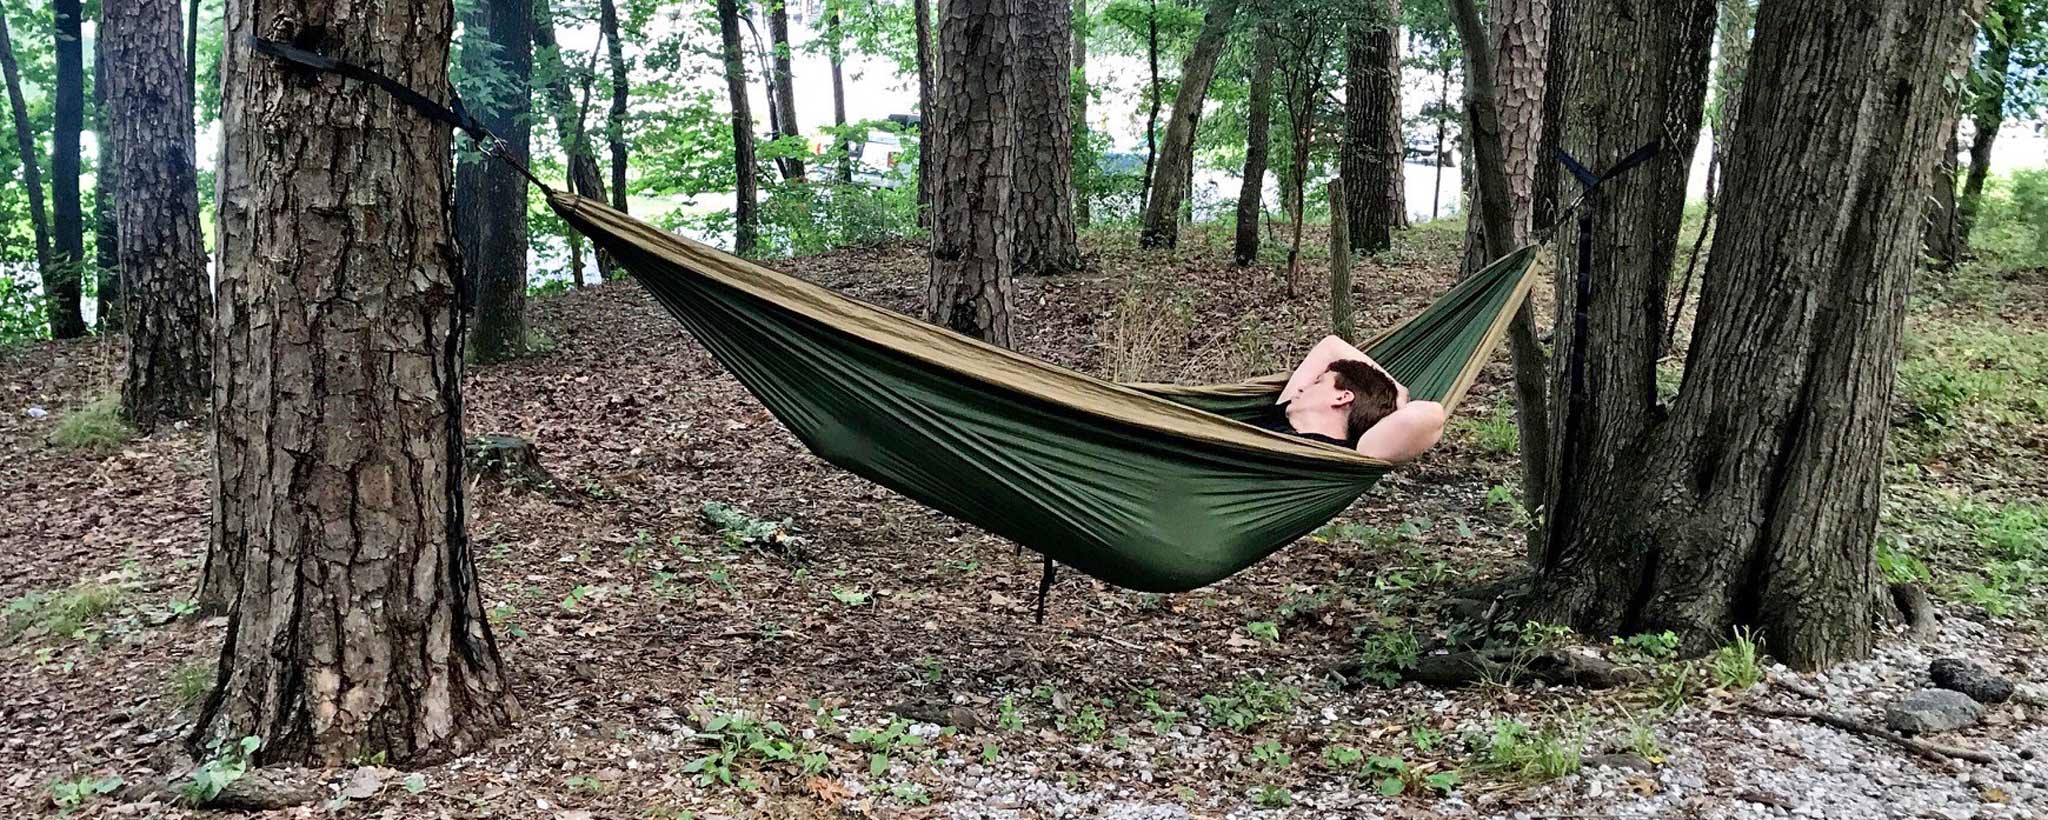 A Boy in laying in a  hammock